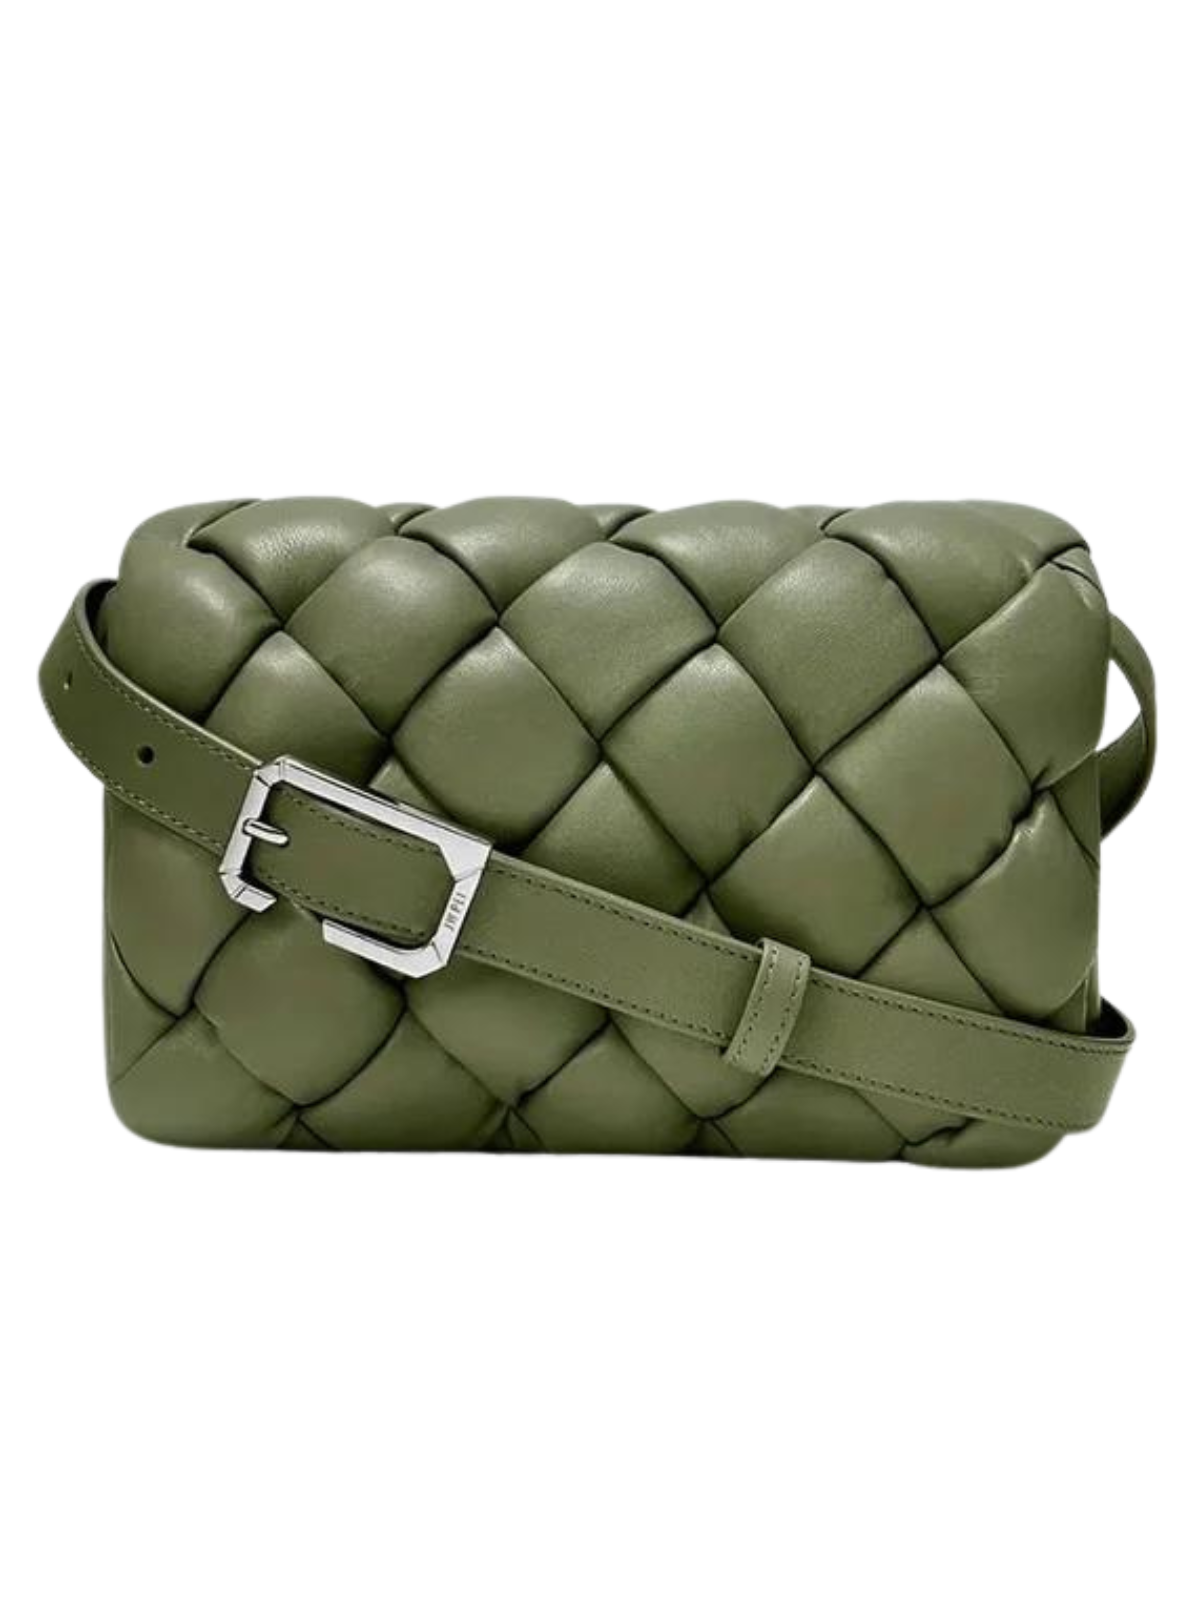 Maze Bag - Sage Green  Jw pei, Sage green, Vegan leather